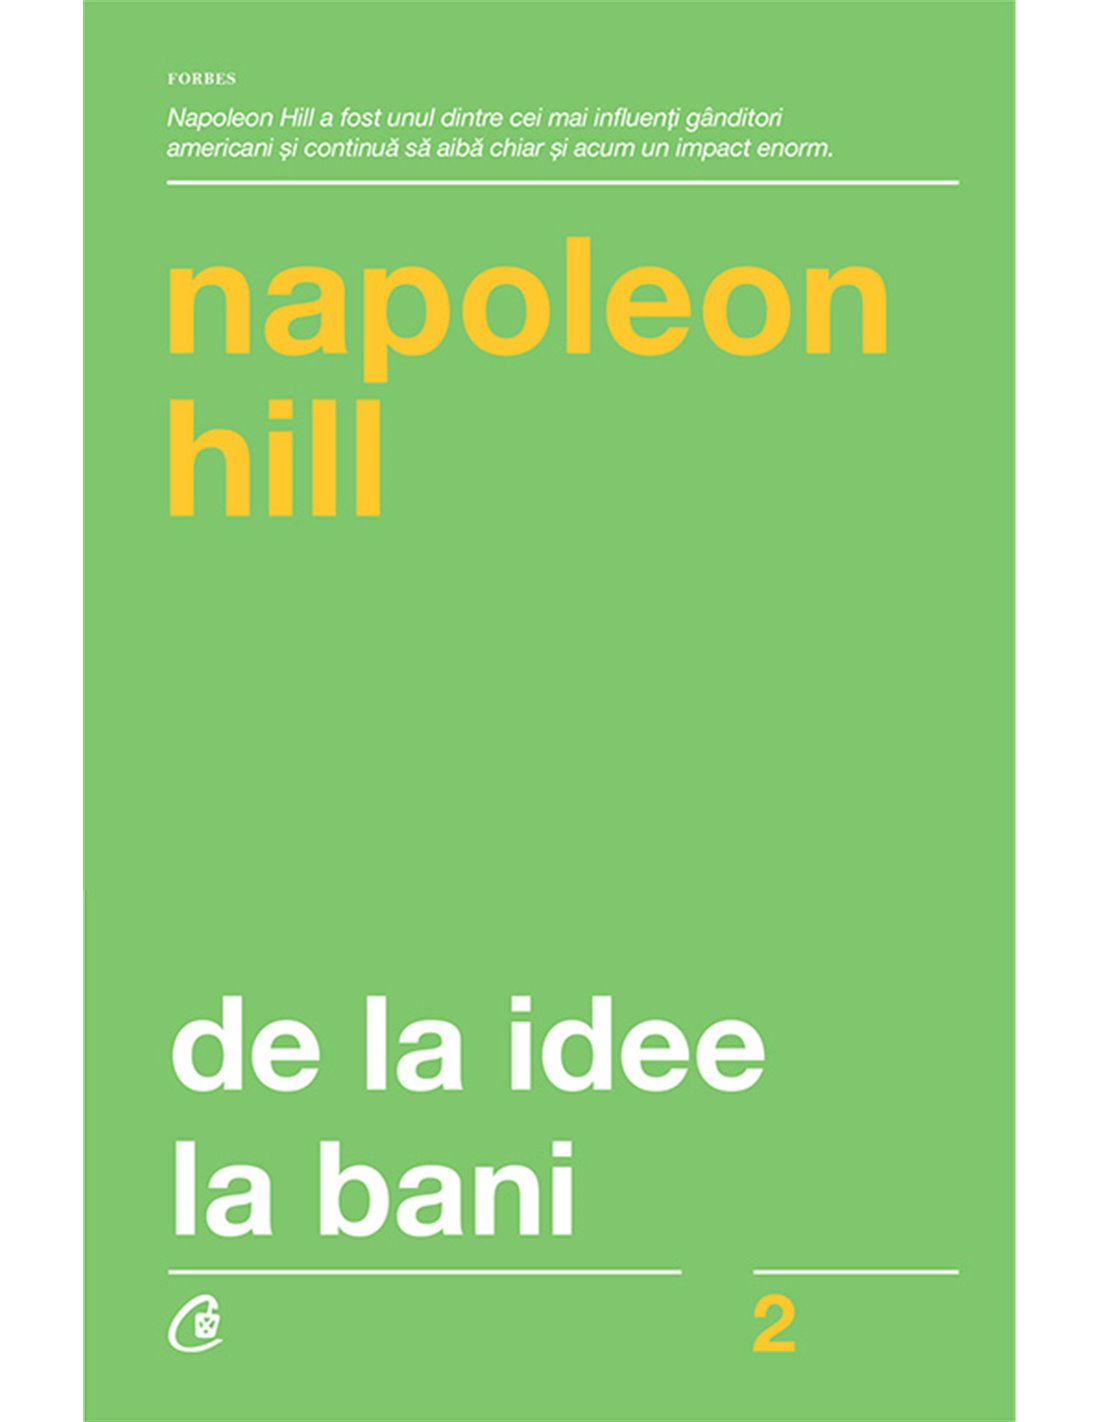 De la idee la bani - Napoleon Hill | Curtea Veche